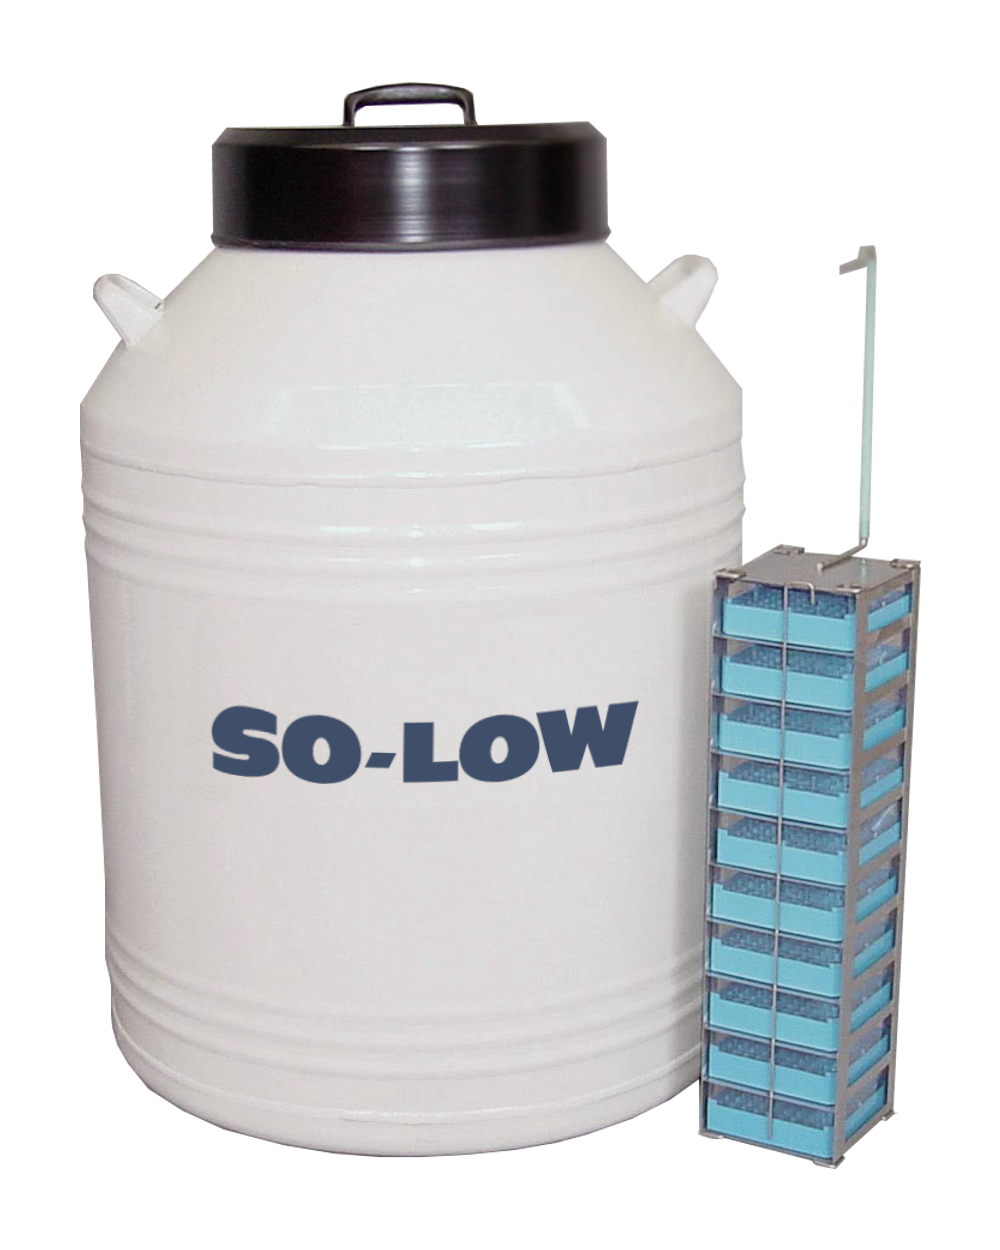 So-Low 61 liter LN2 Tank w/ Polycarbonate Boxes